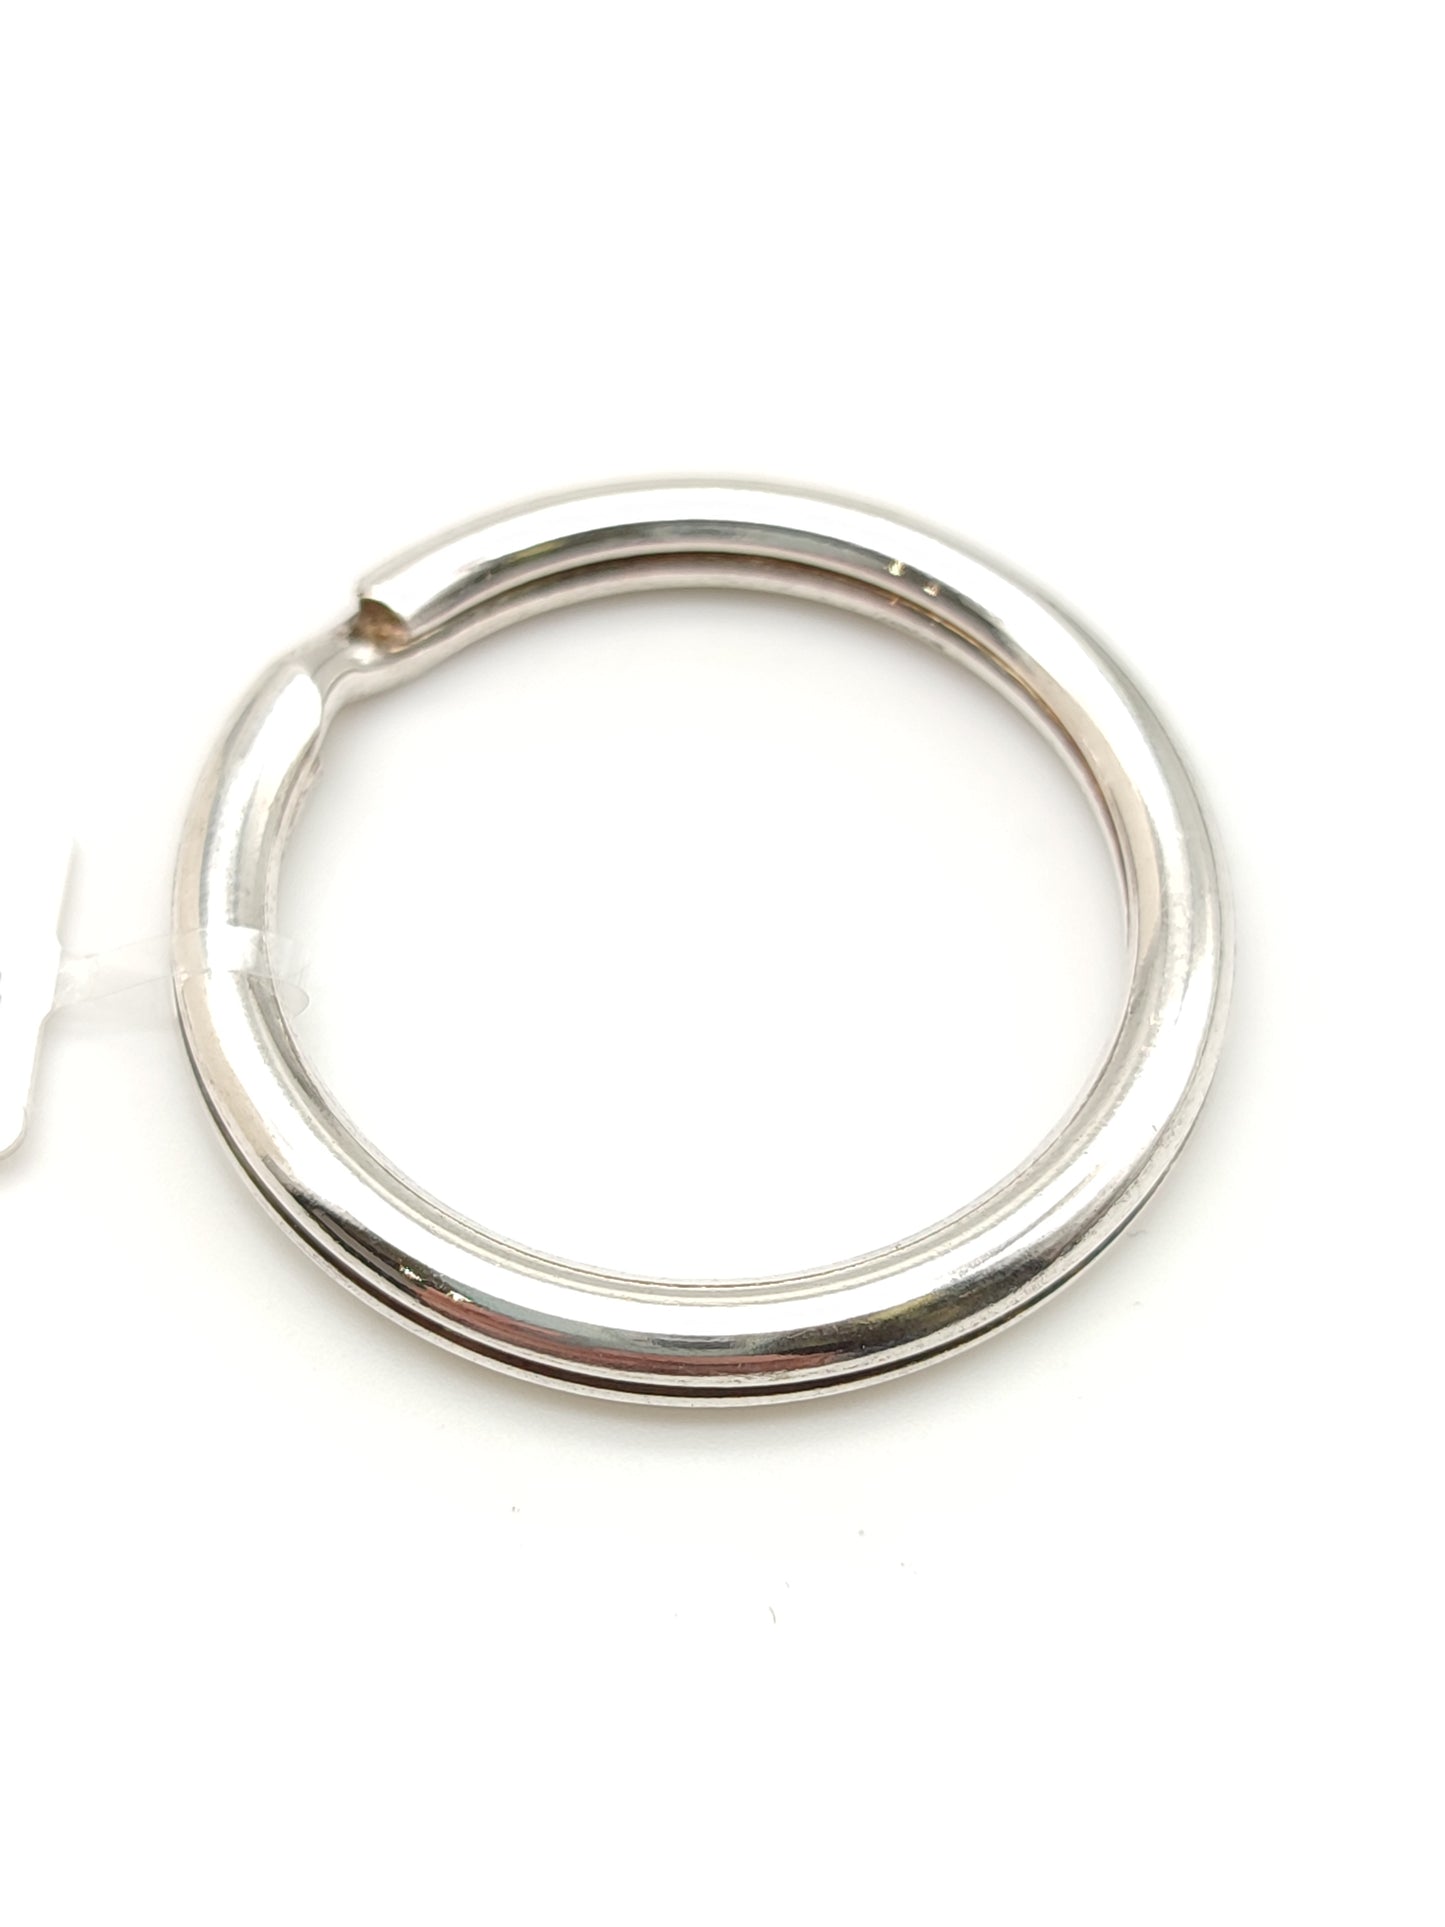 Silver key ring brisé ring